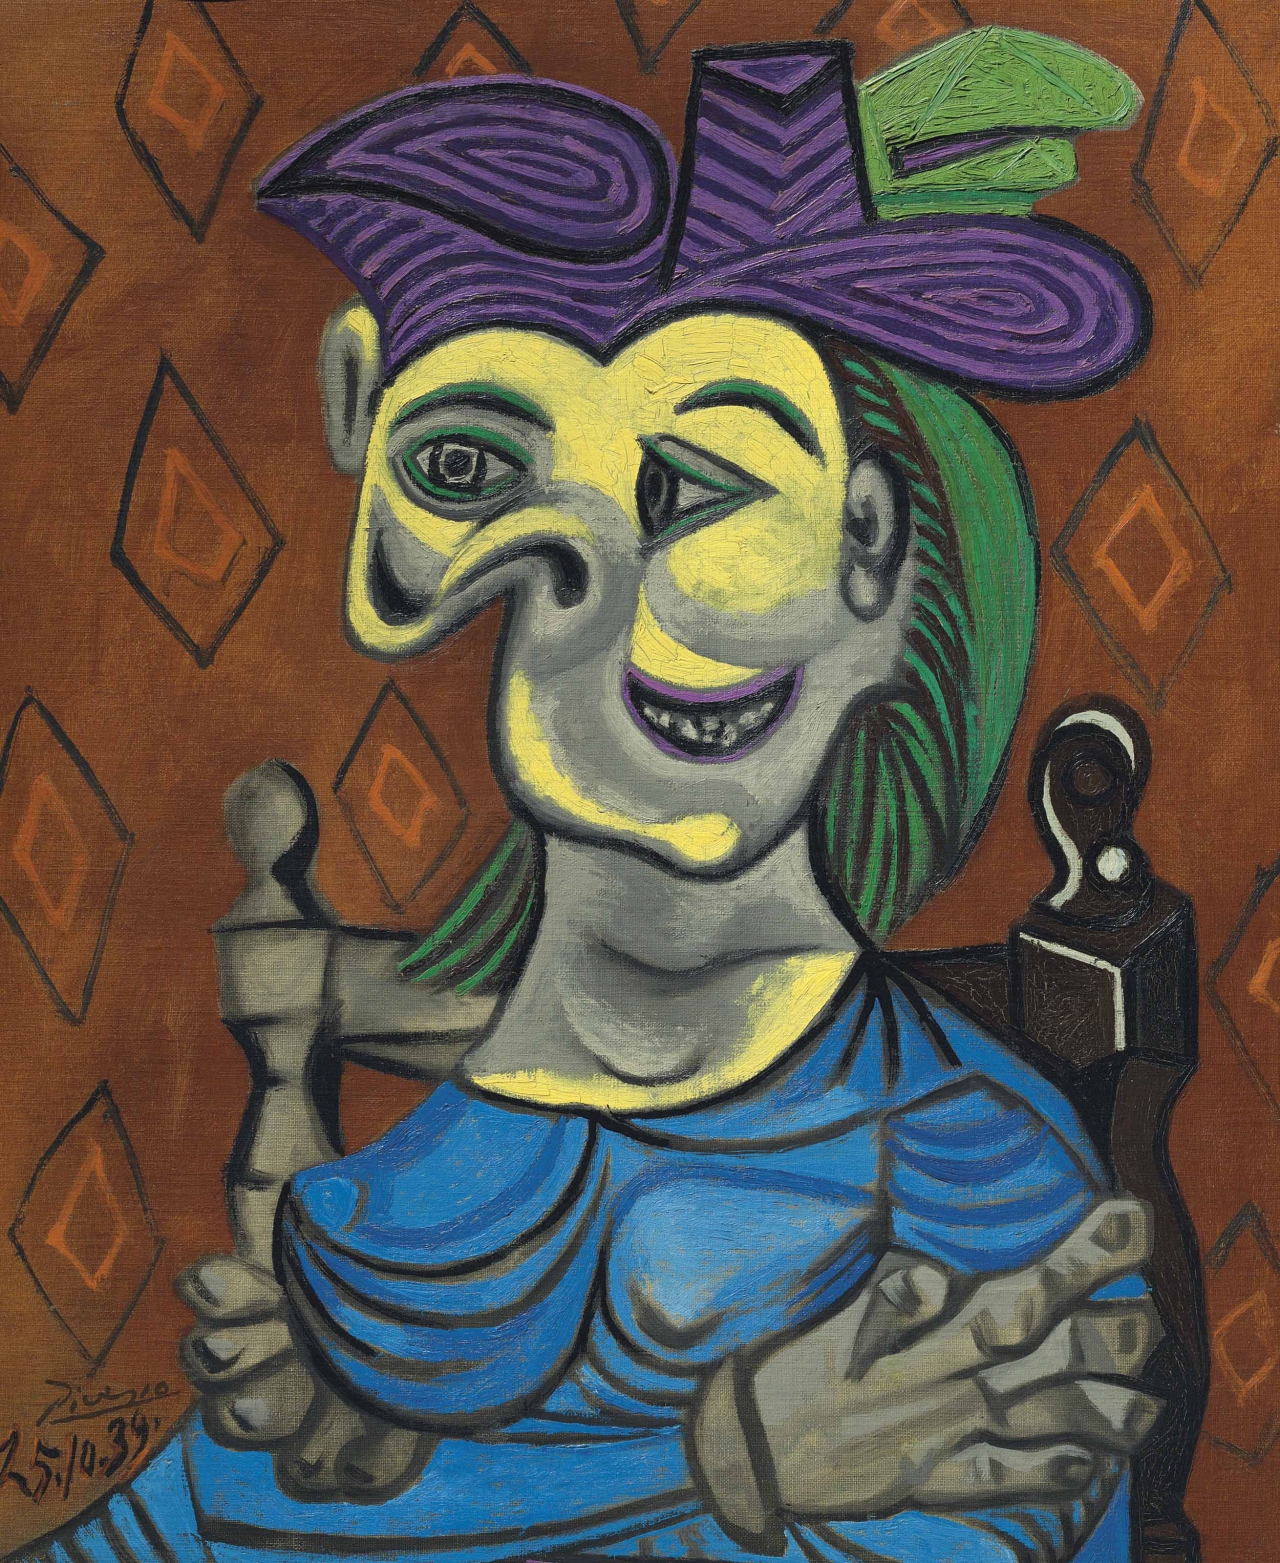 입체파 화가 피카소는 얼굴의 단일성을 해체했다. 그에게 분열적 인간이 오히려 정상적인지 모른다. 파블로 피카소Pablo Picasso (1881-1973). Femme assise, robe bleue, 1939, 캔버스에 오일, 73 x 60 cm, 개인소장.